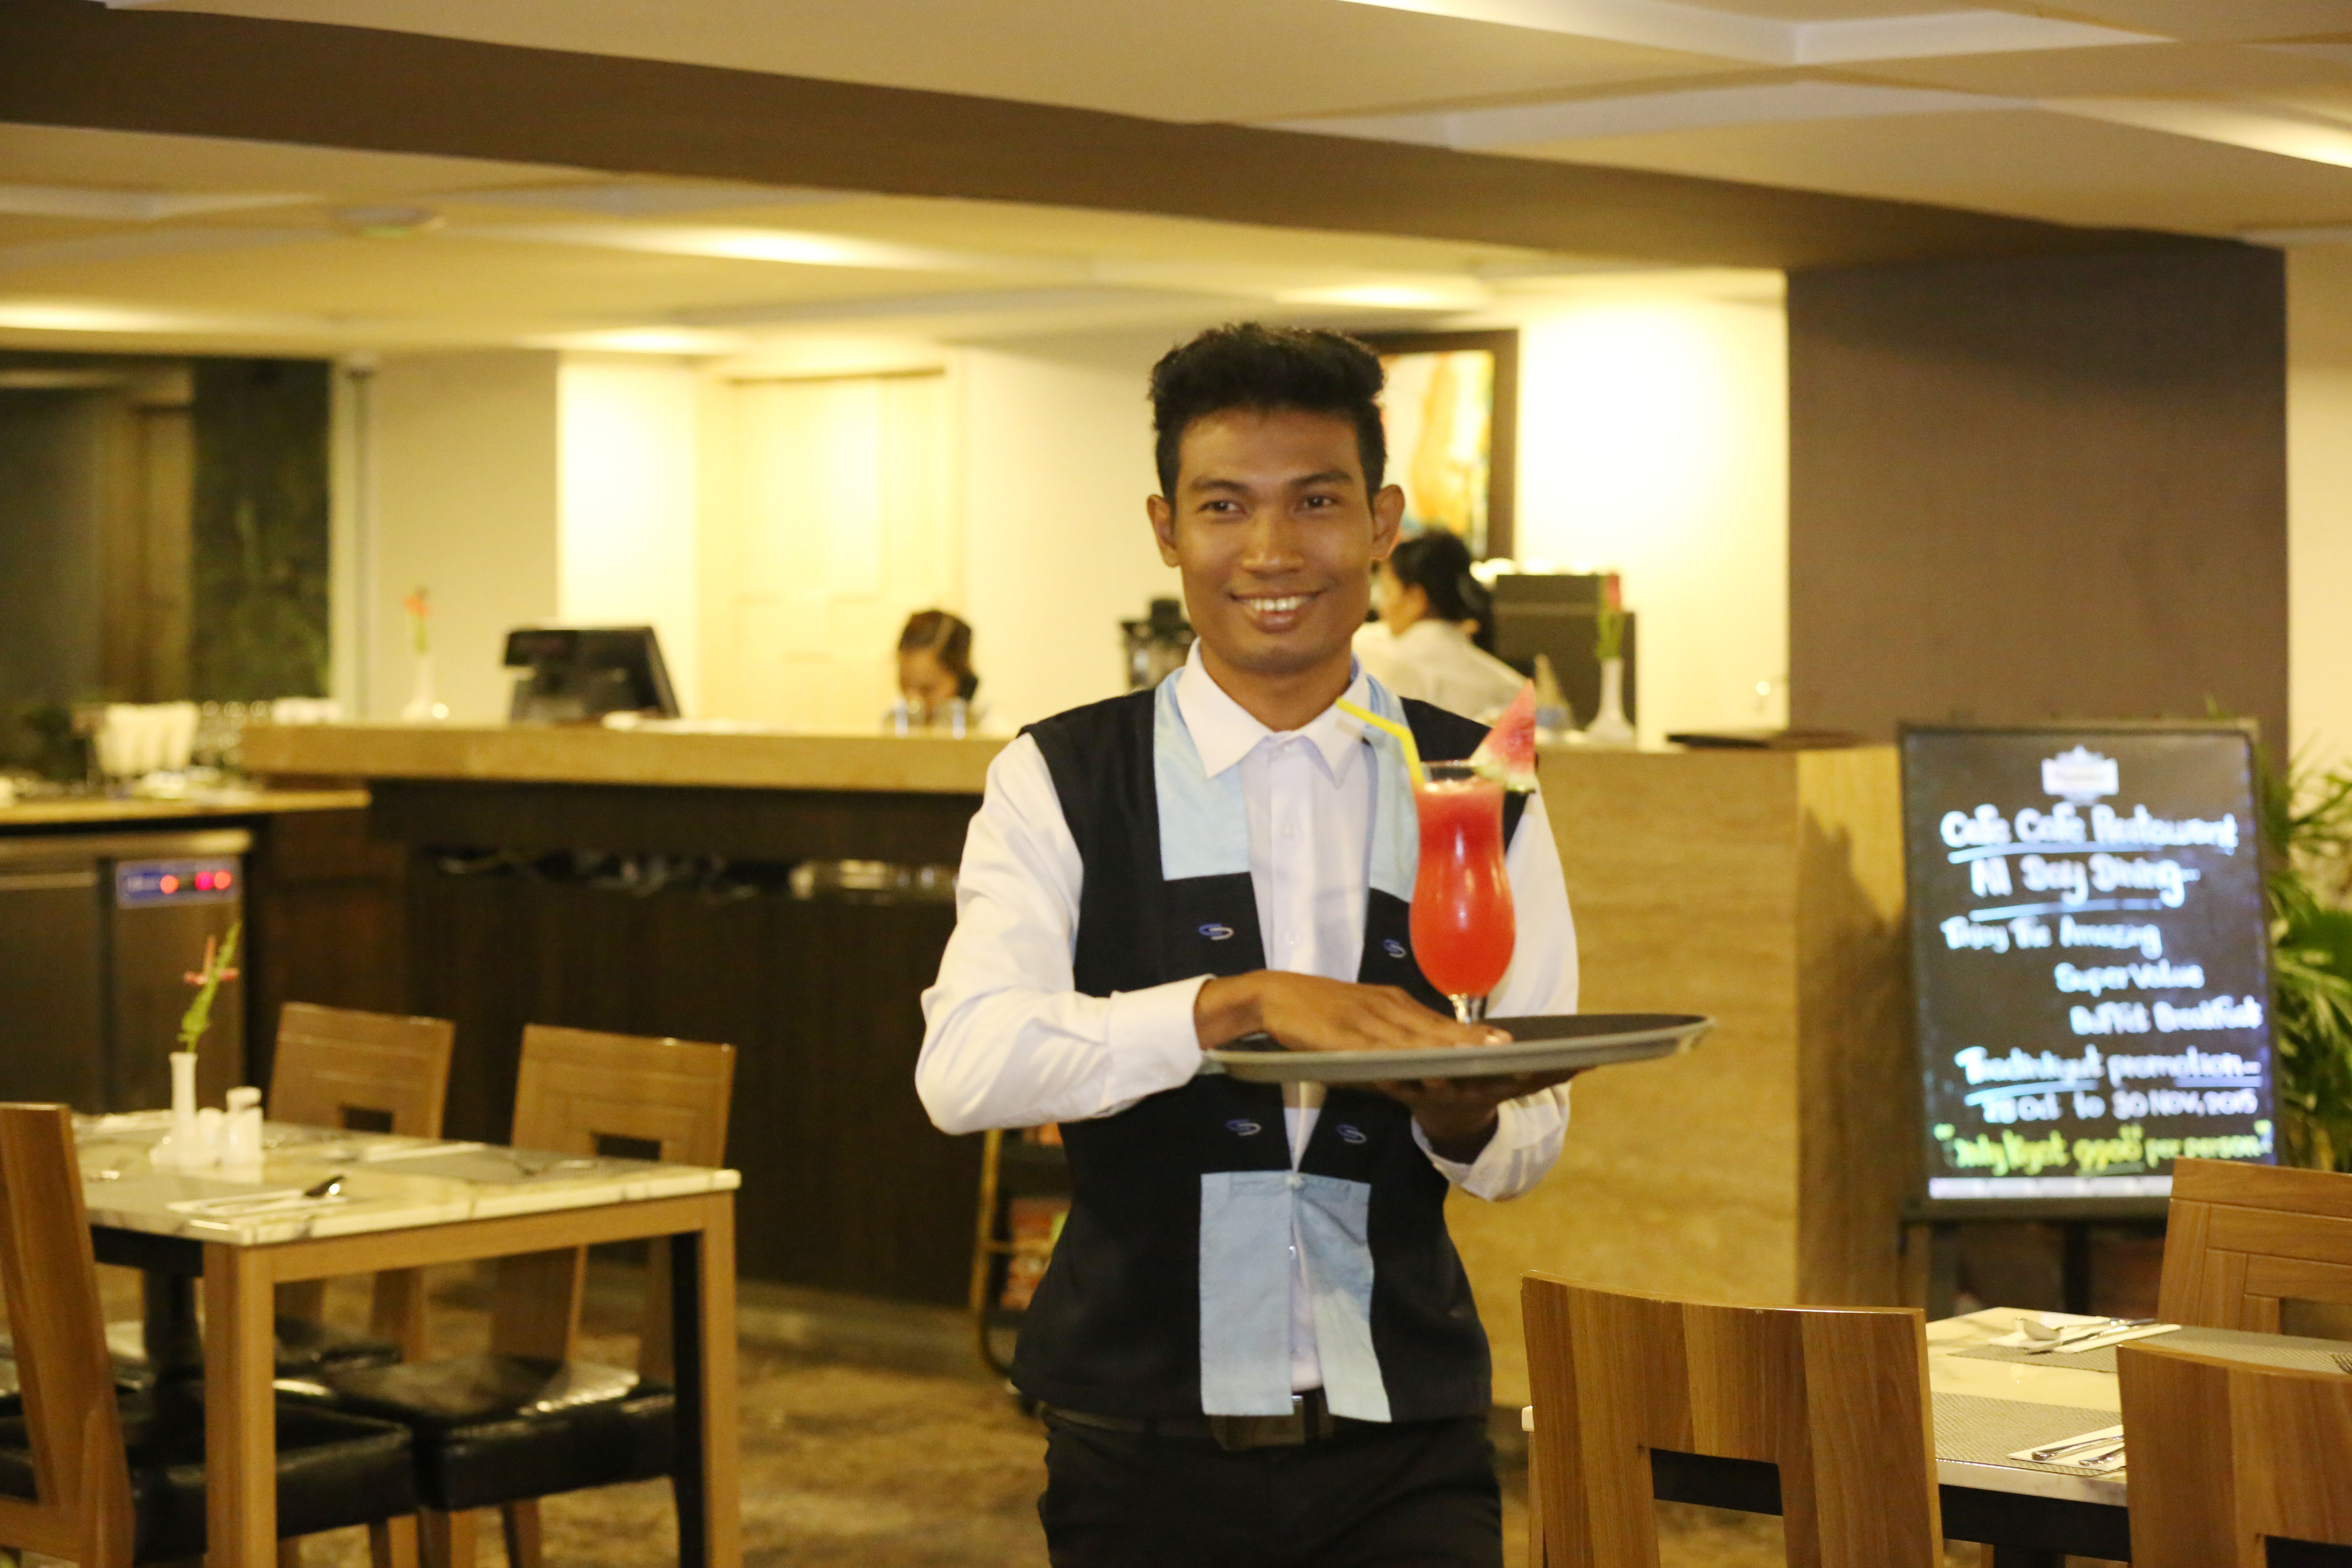 Ein junger Serviceangestellter läuft lächelnd durchs Restaurant mit einem Tablet in der Hand, auf dem ein Cocktail steht.